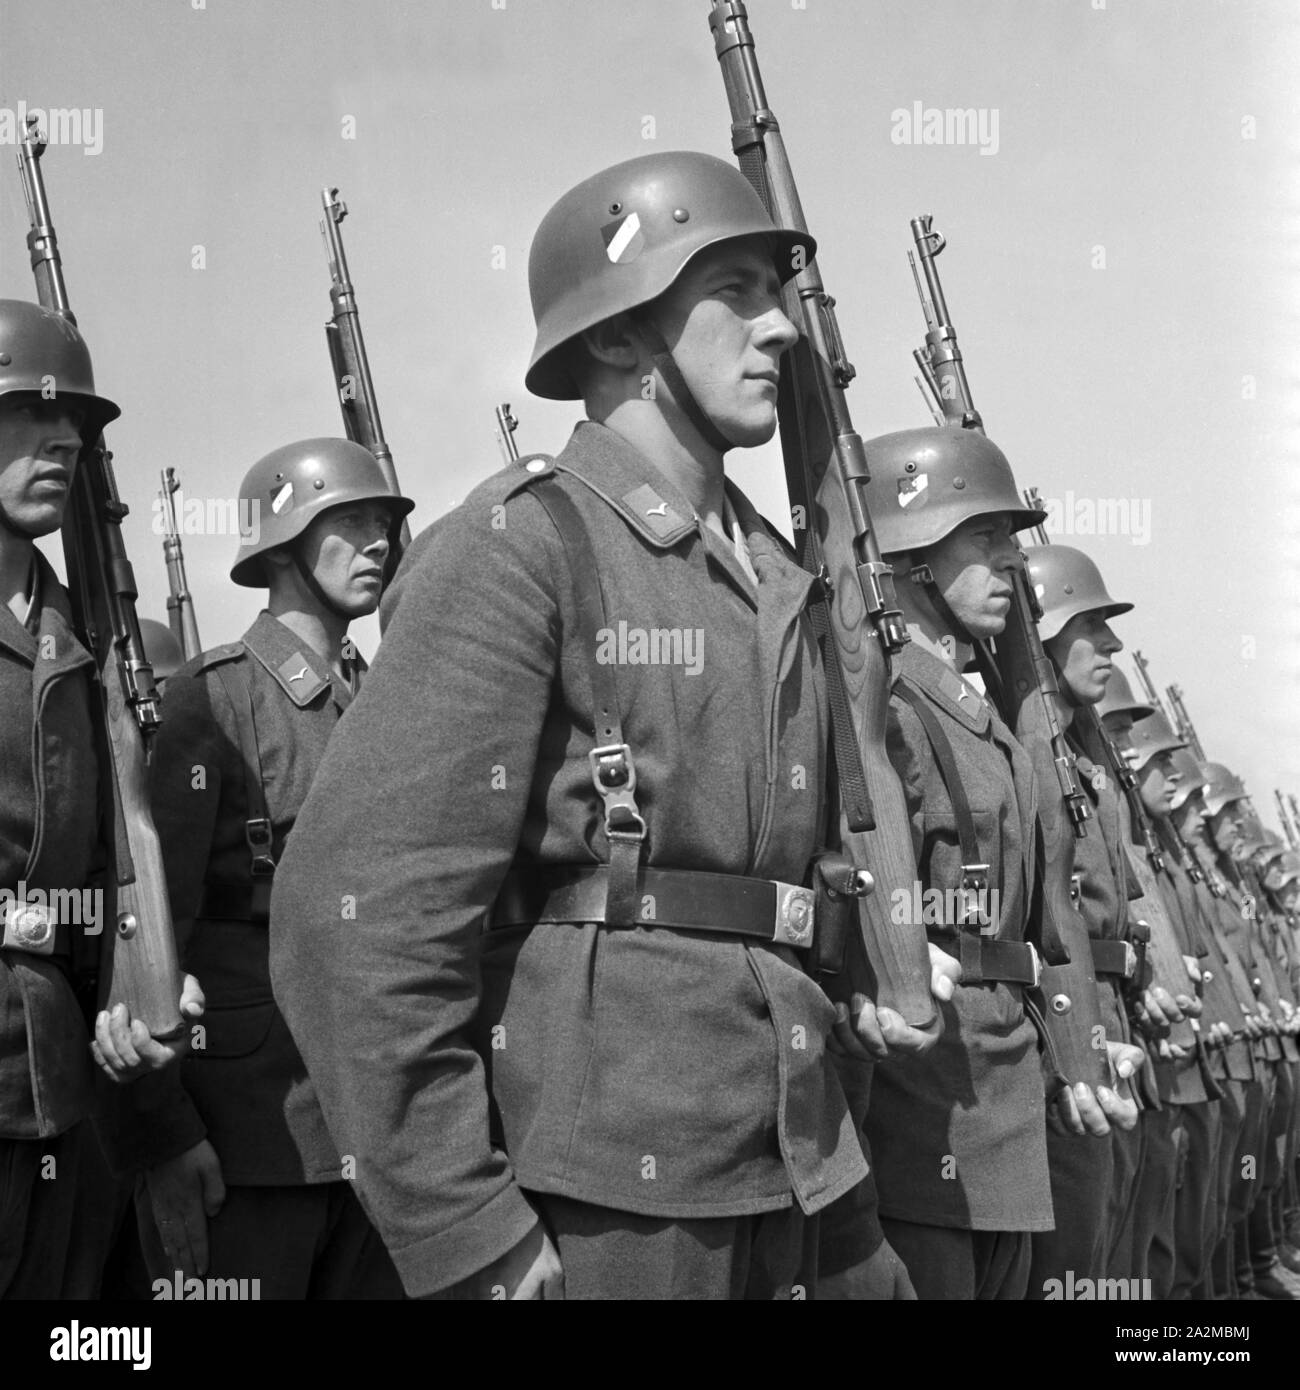 Soldaten eines Luftnachrichtenregiments, Deutschland 1940. Soldiers of a signal corps regiment, Gerrmany 1940. Stock Photo